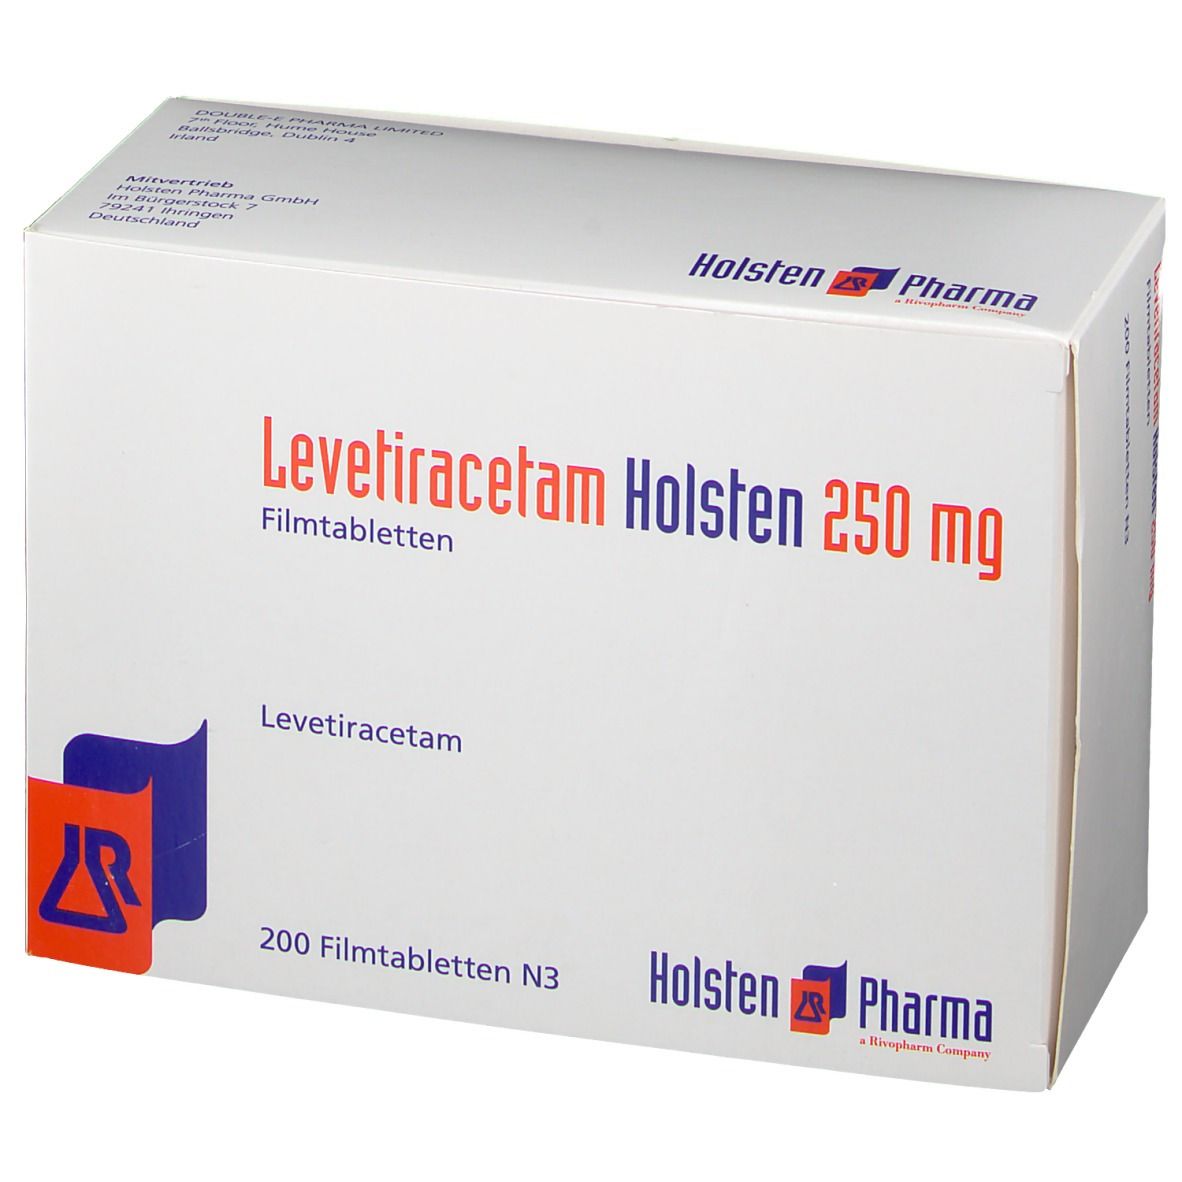 Levetiracetam Holsten 250 mg